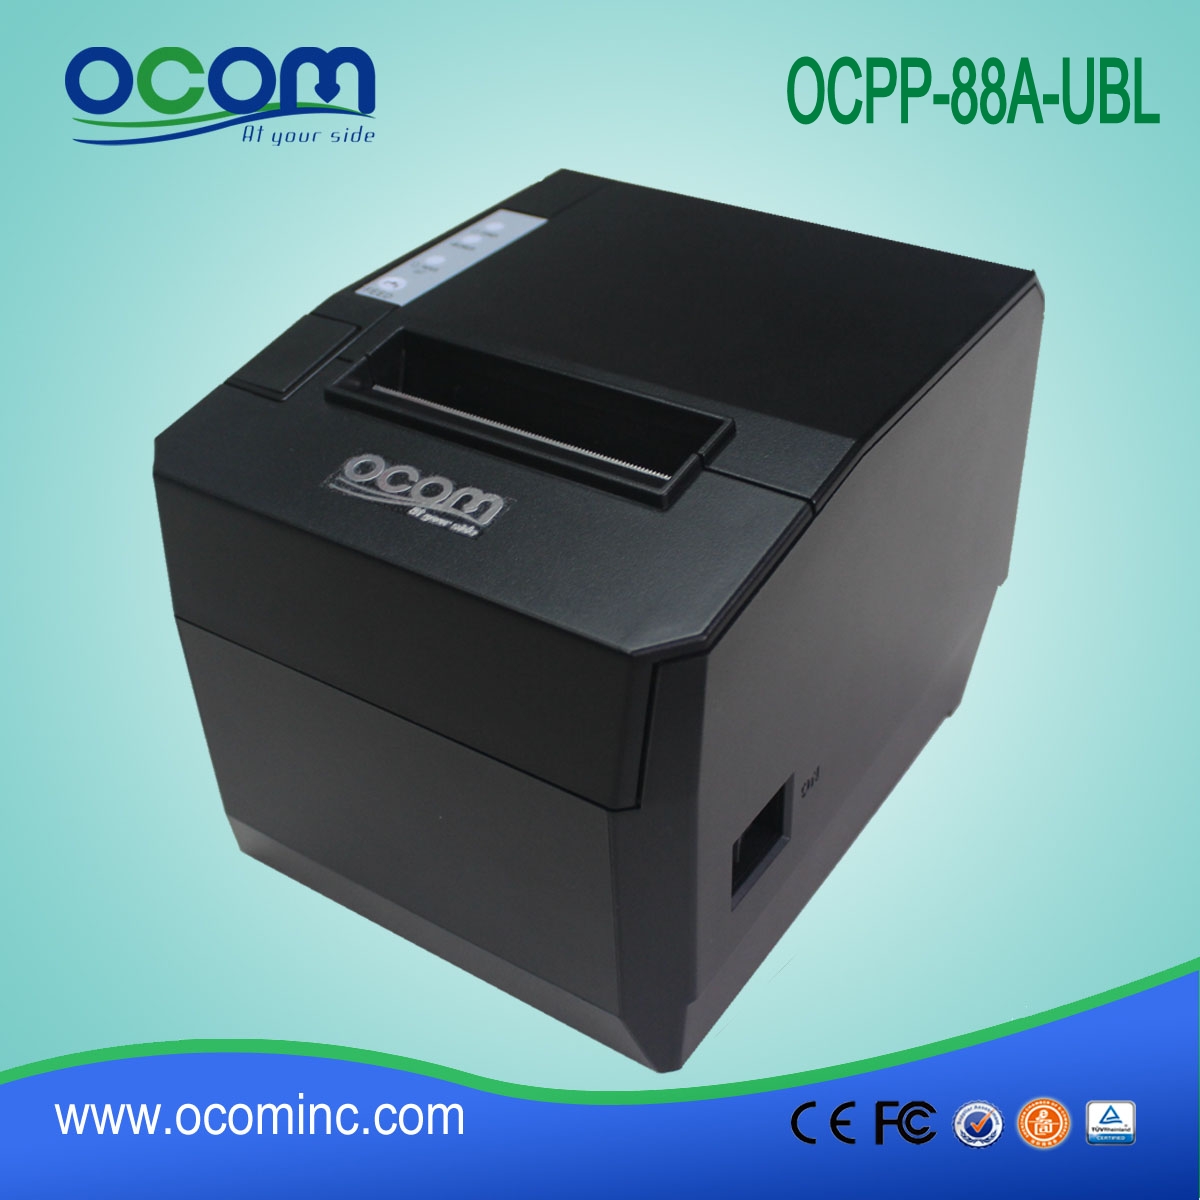 OCPP-88A Łatwa konfiguracja restauracji 80mm termiczna drukarka pokwitowań z funkcją samodzielnego cięcia